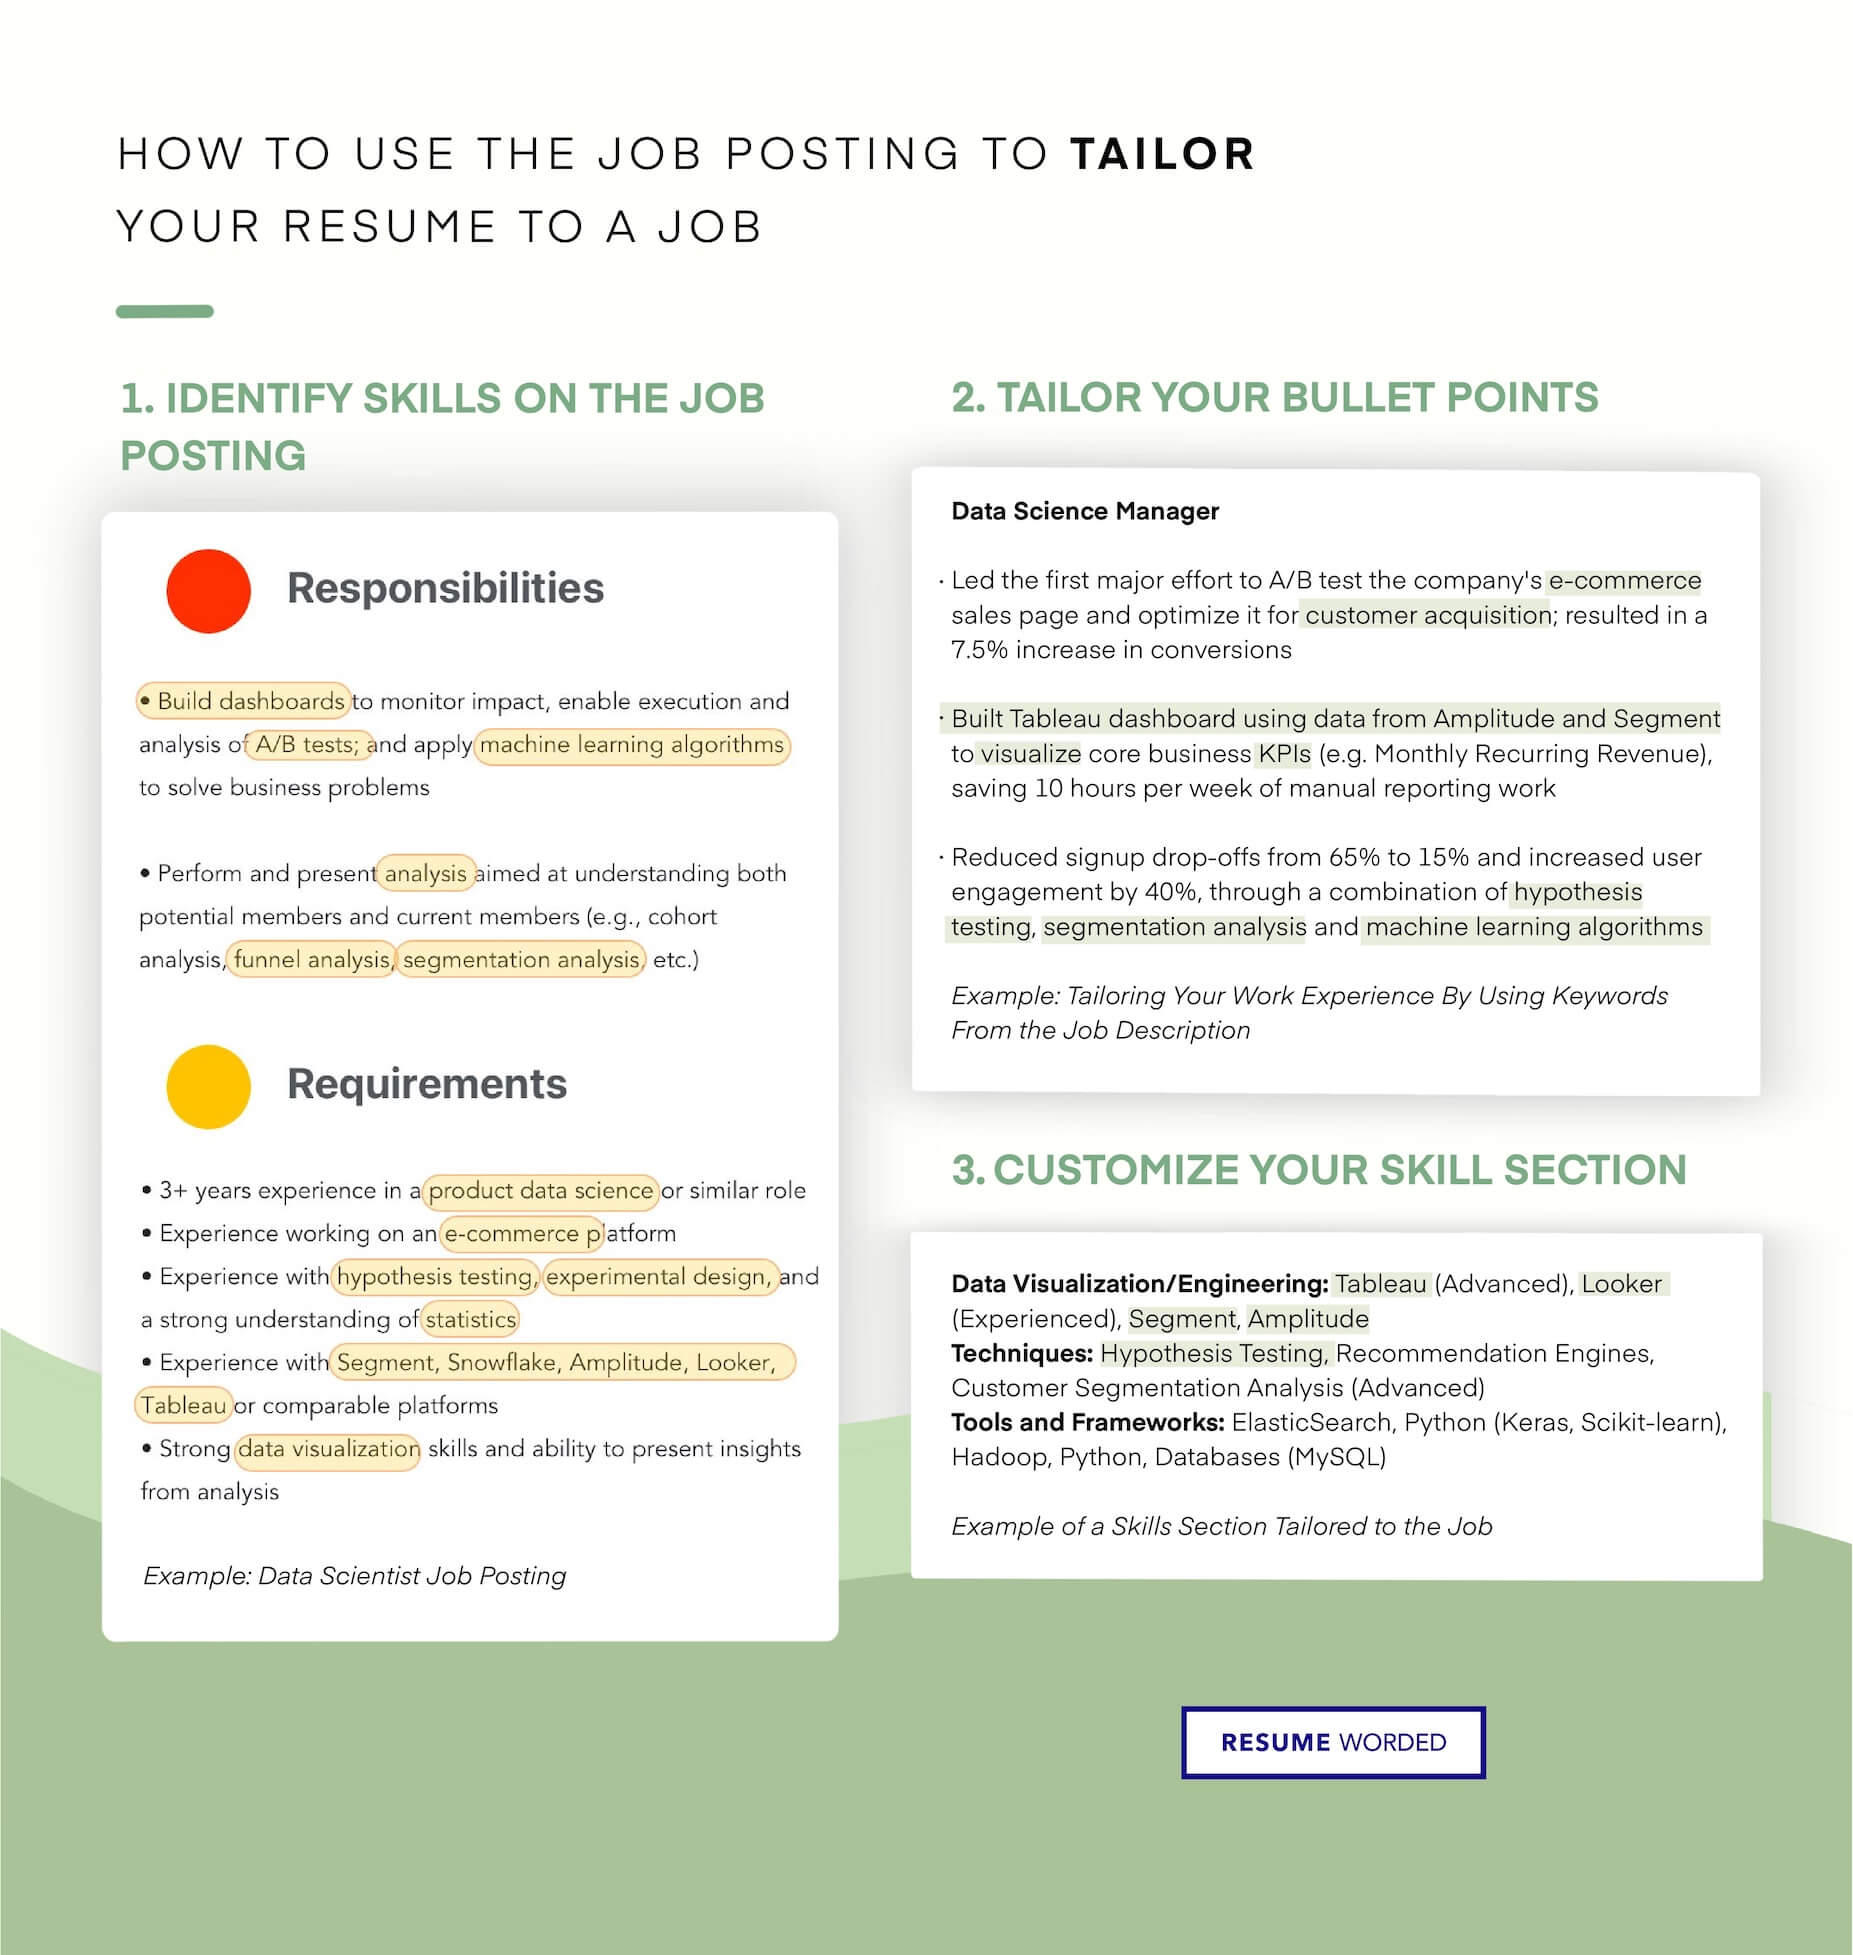 skills on resume for preschool teacher